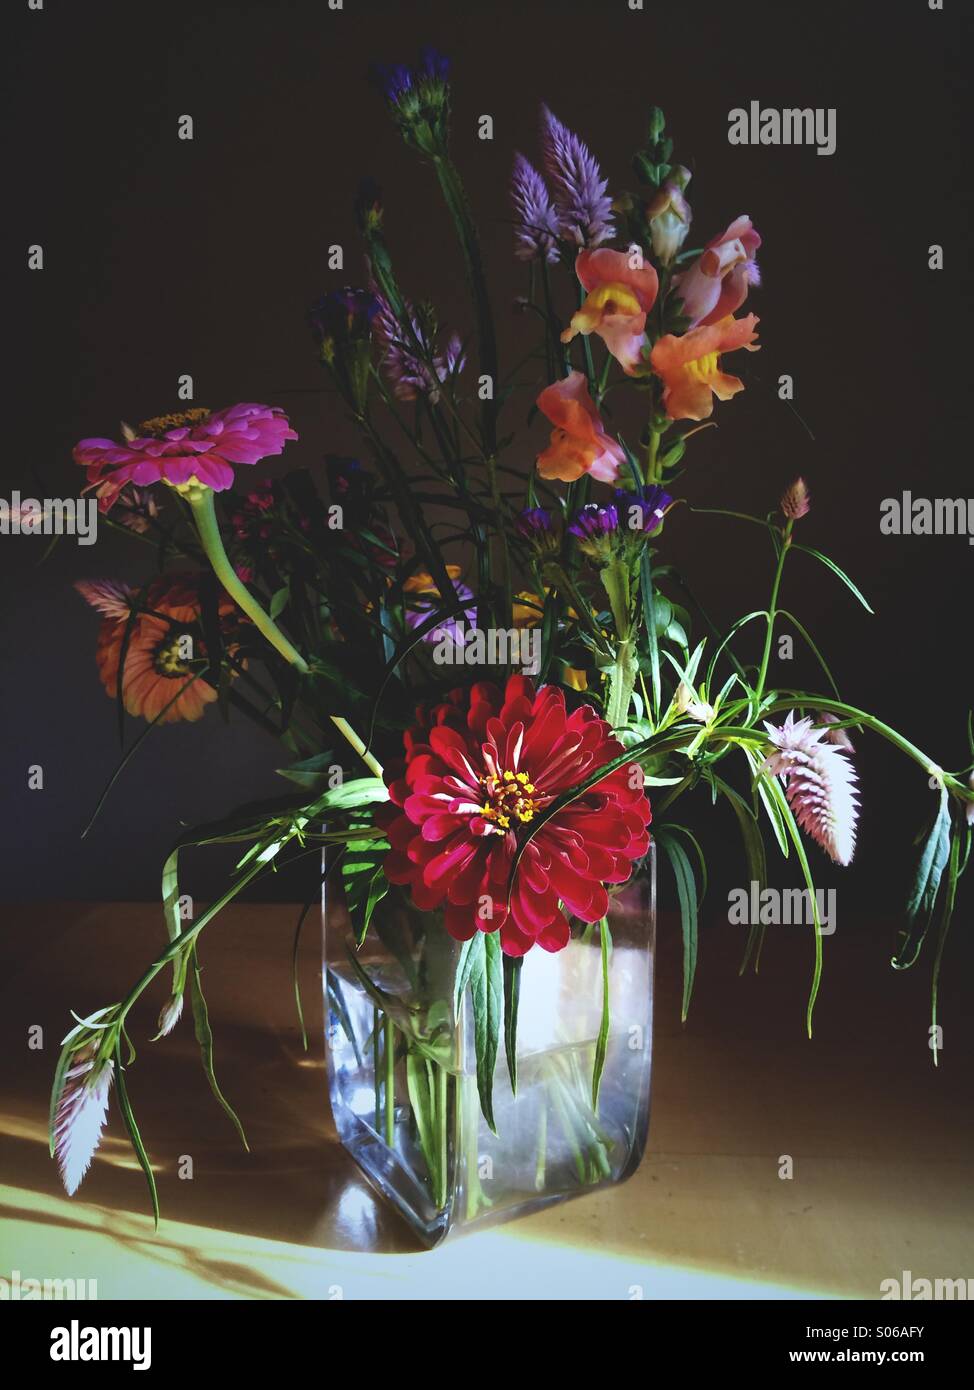 A la fin de l'été creative flower arrangement dans un vase sur une table. Banque D'Images